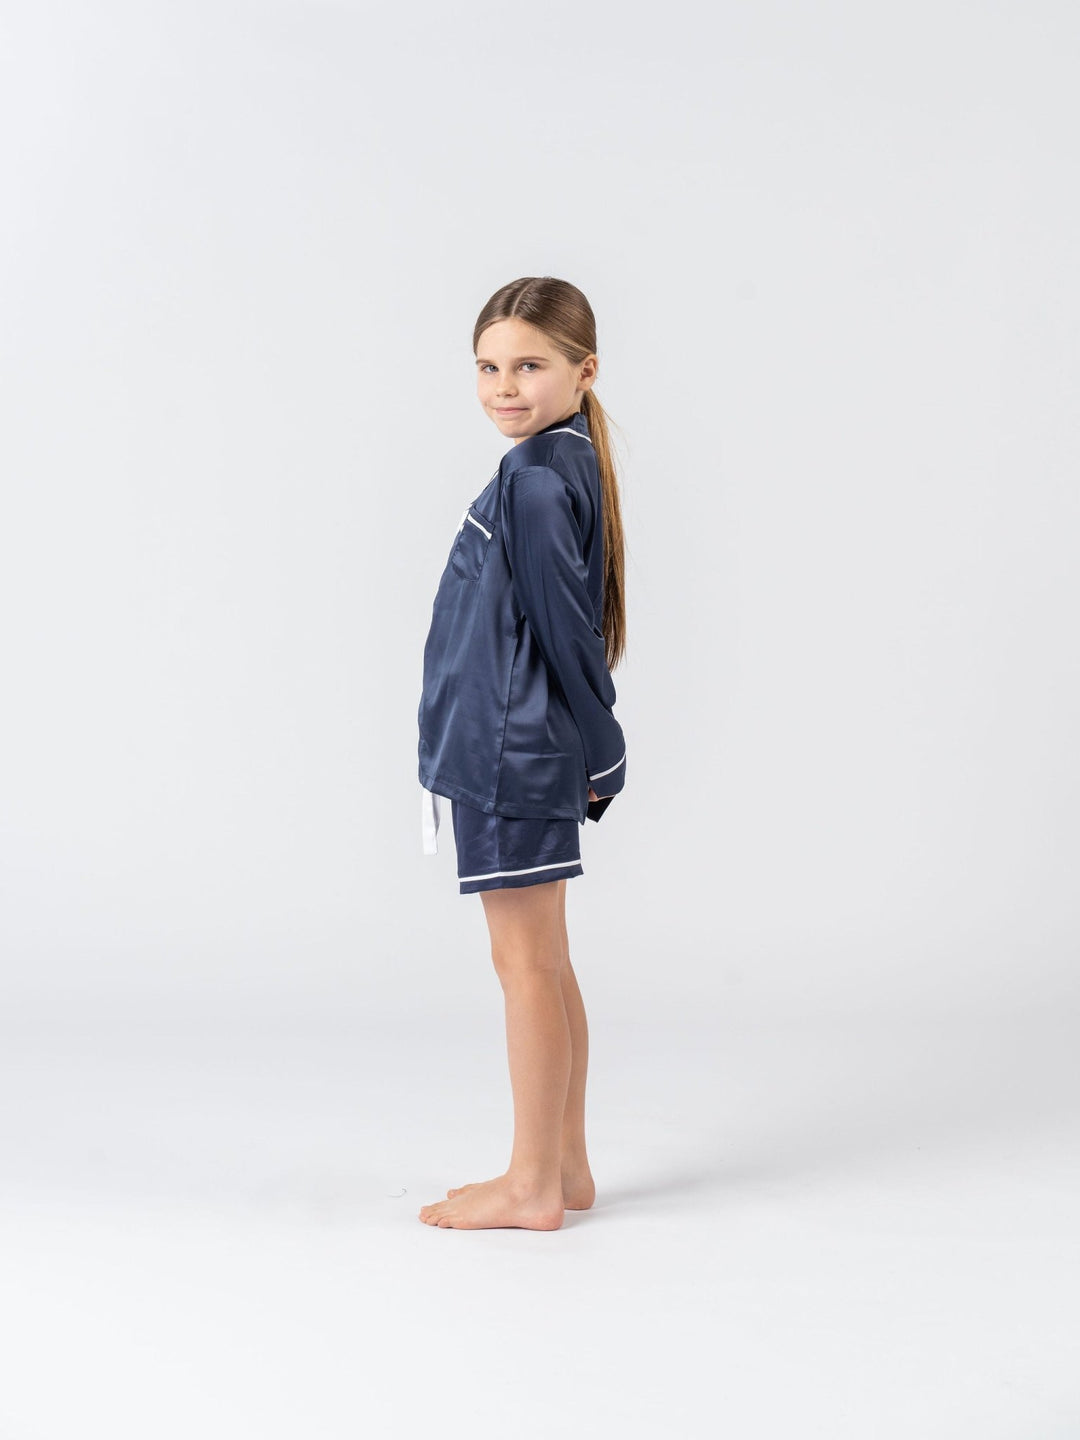 Kids Satin Personalised Pyjama Set - Long Sleeve with Shorts Navy/White